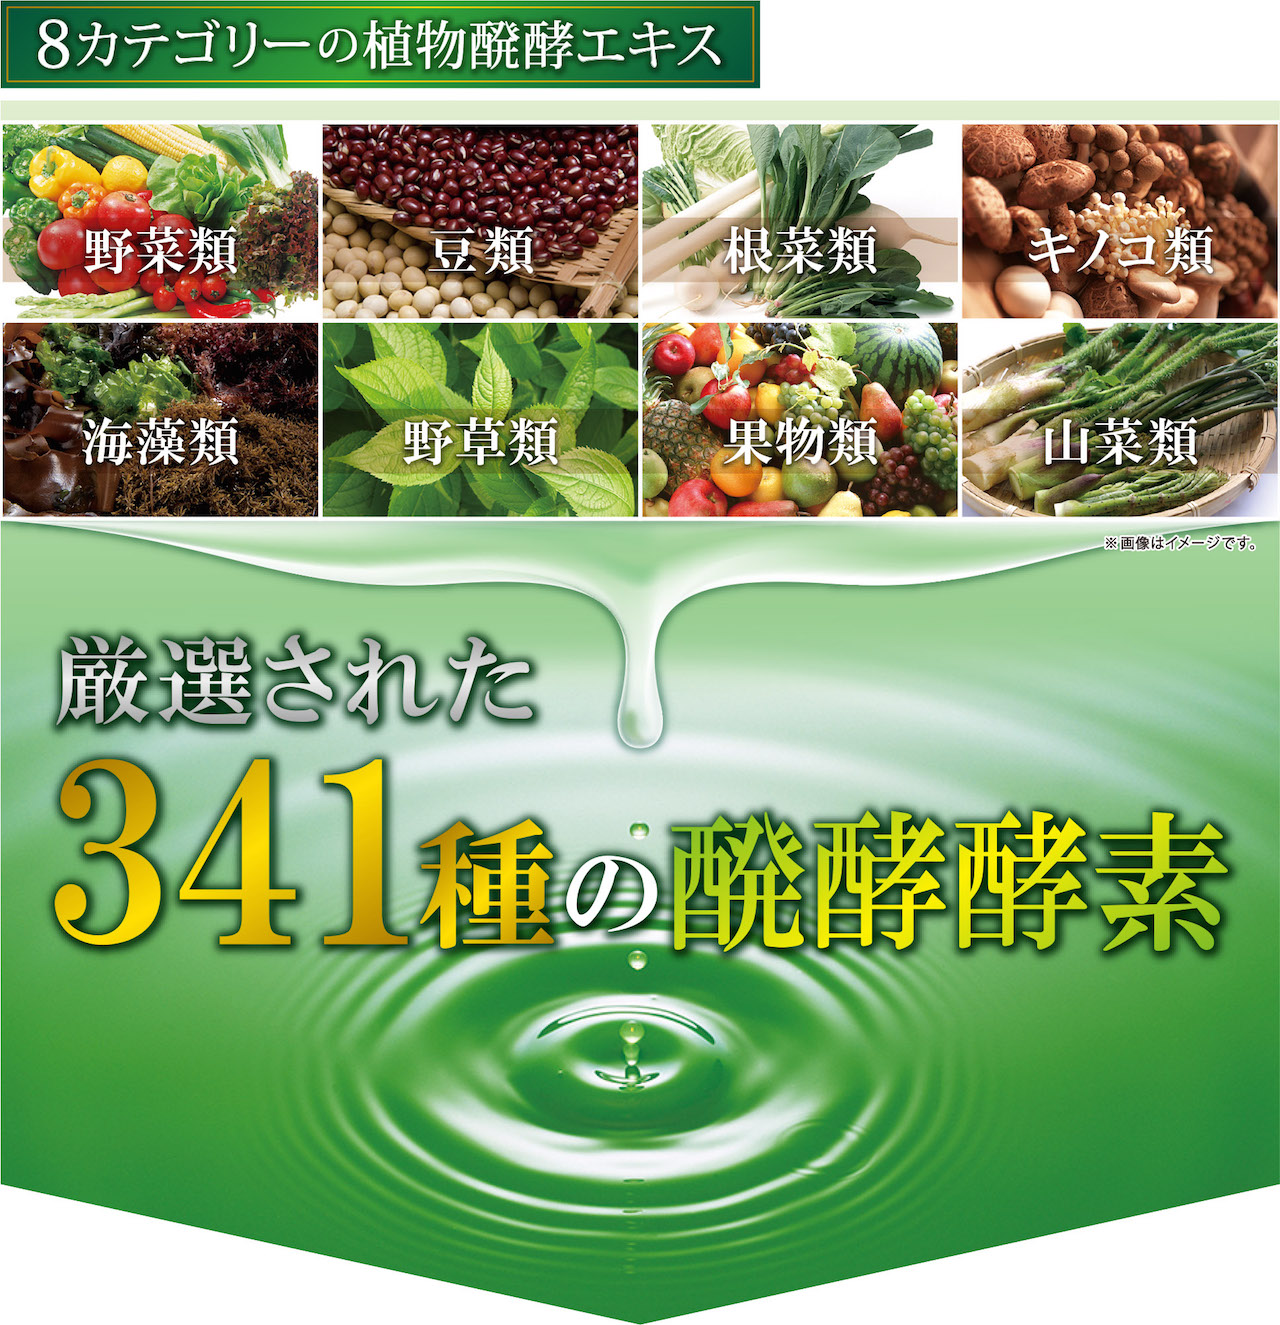 8カテゴリーの植物醗酵エキス　野菜類　豆類　根菜類　キノコ類 海藻類　野草類　果物類　山菜類 厳選された３４１種の醗酵酵素　※画像はイメージです。